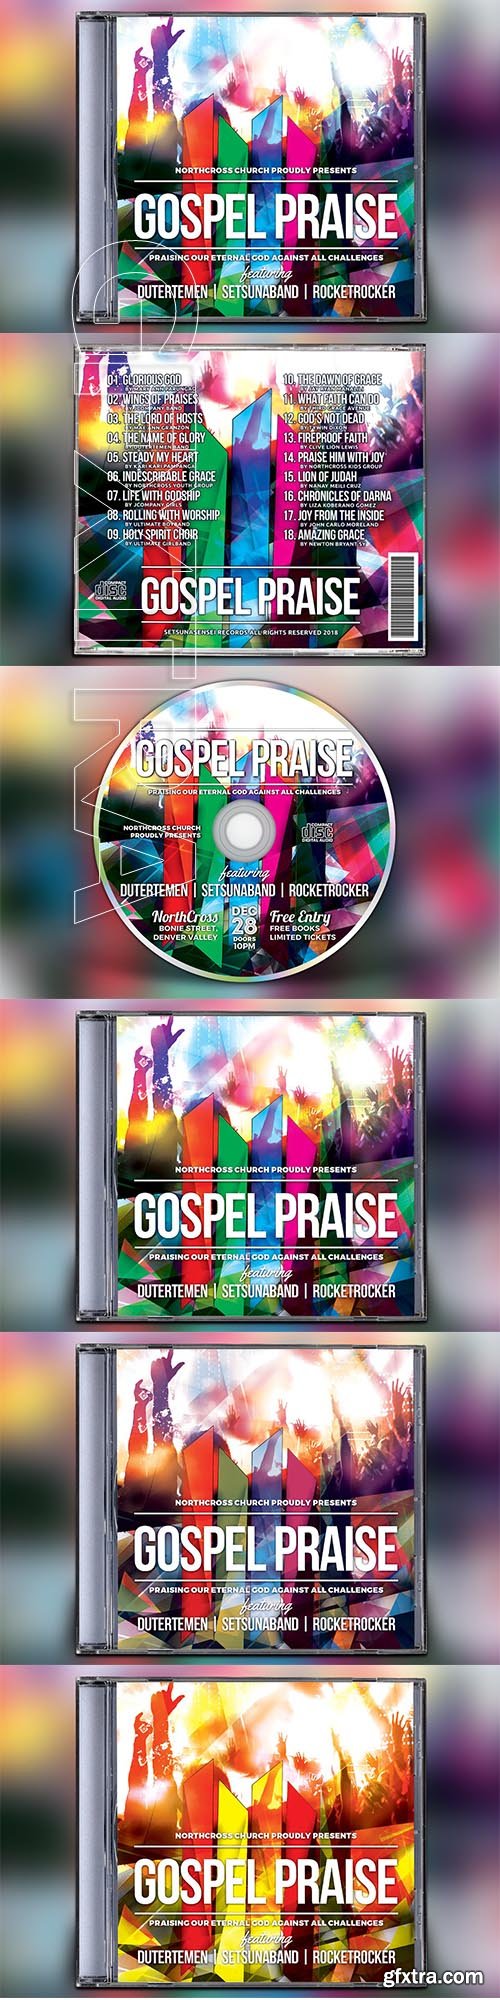 CreativeMarket - Gospel Praise CD Album Artwork 3204548